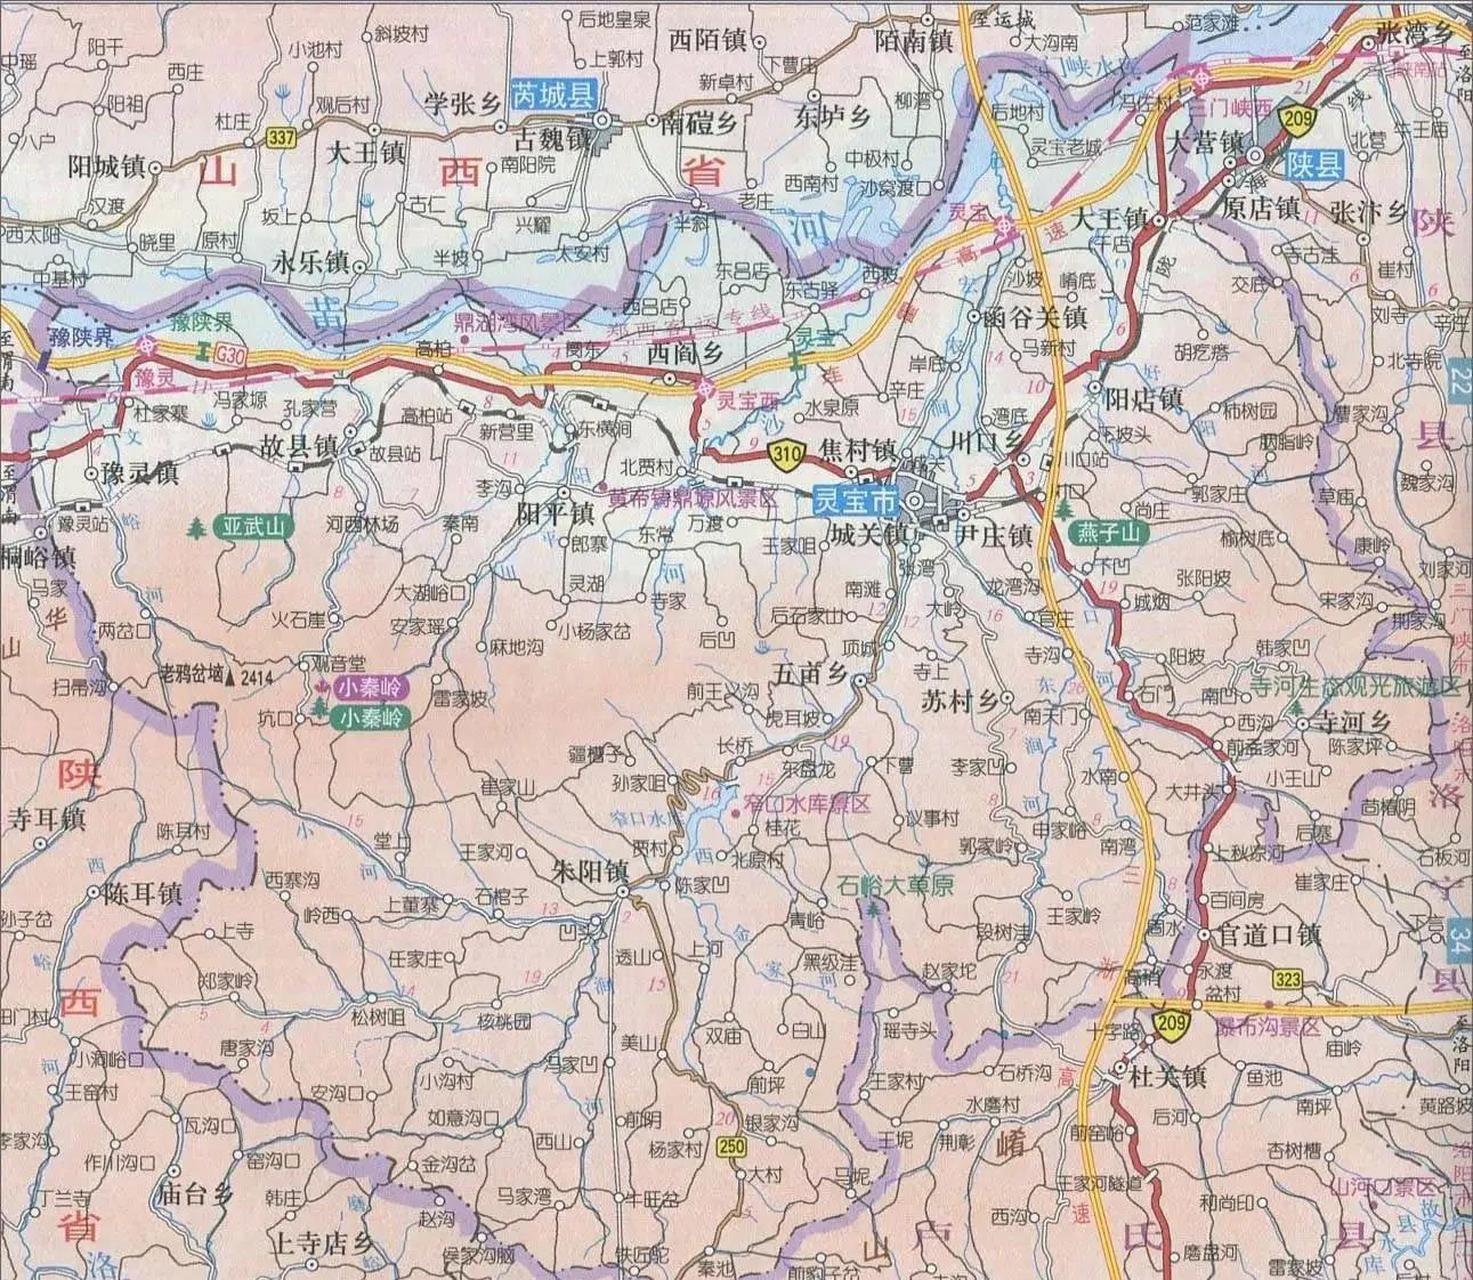 朱阳镇地图图片